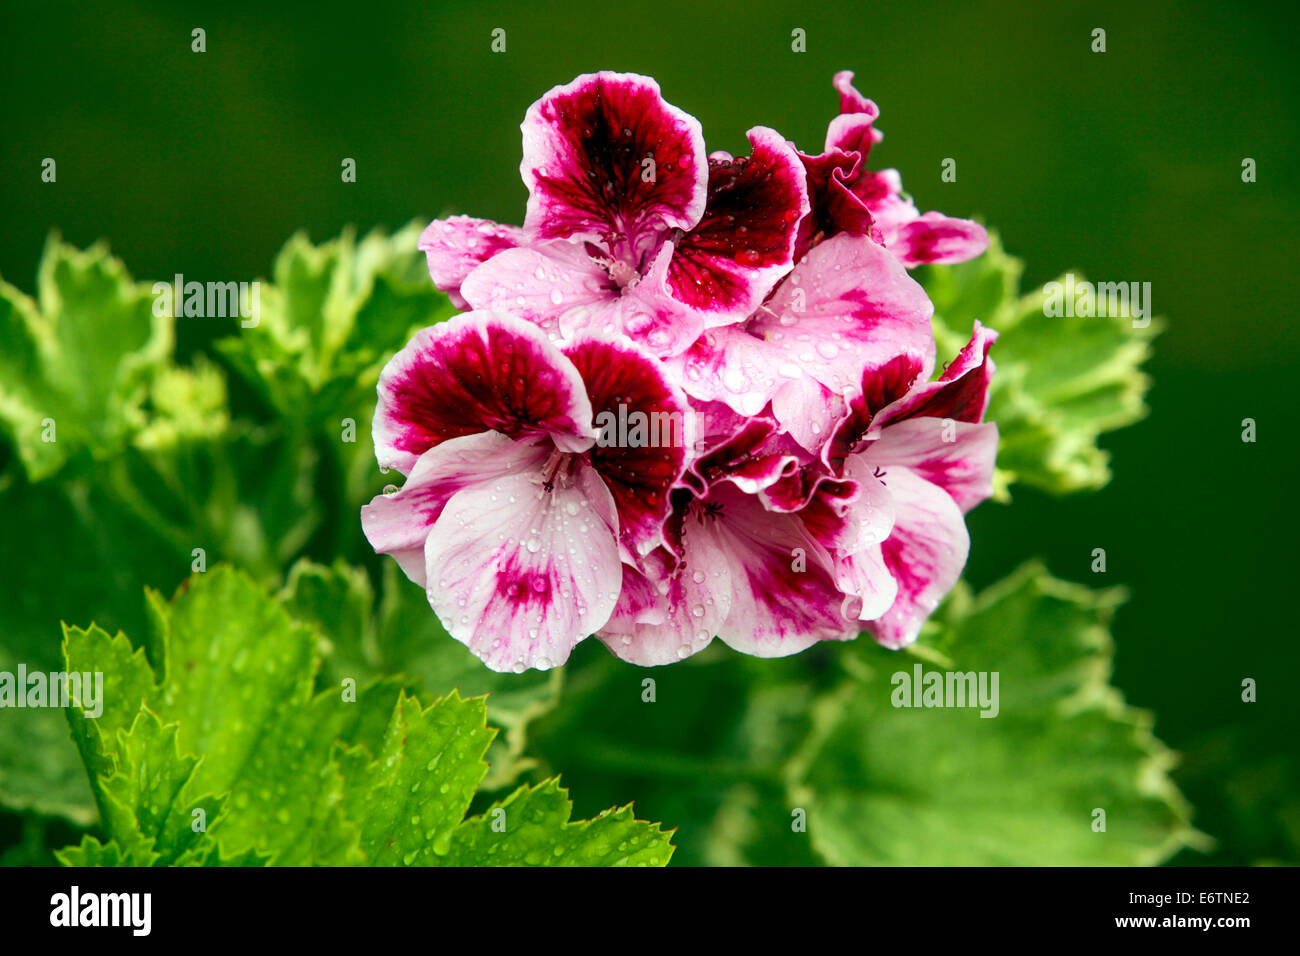 Geranium flower Pelargonium zonale hybrid Stock Photo